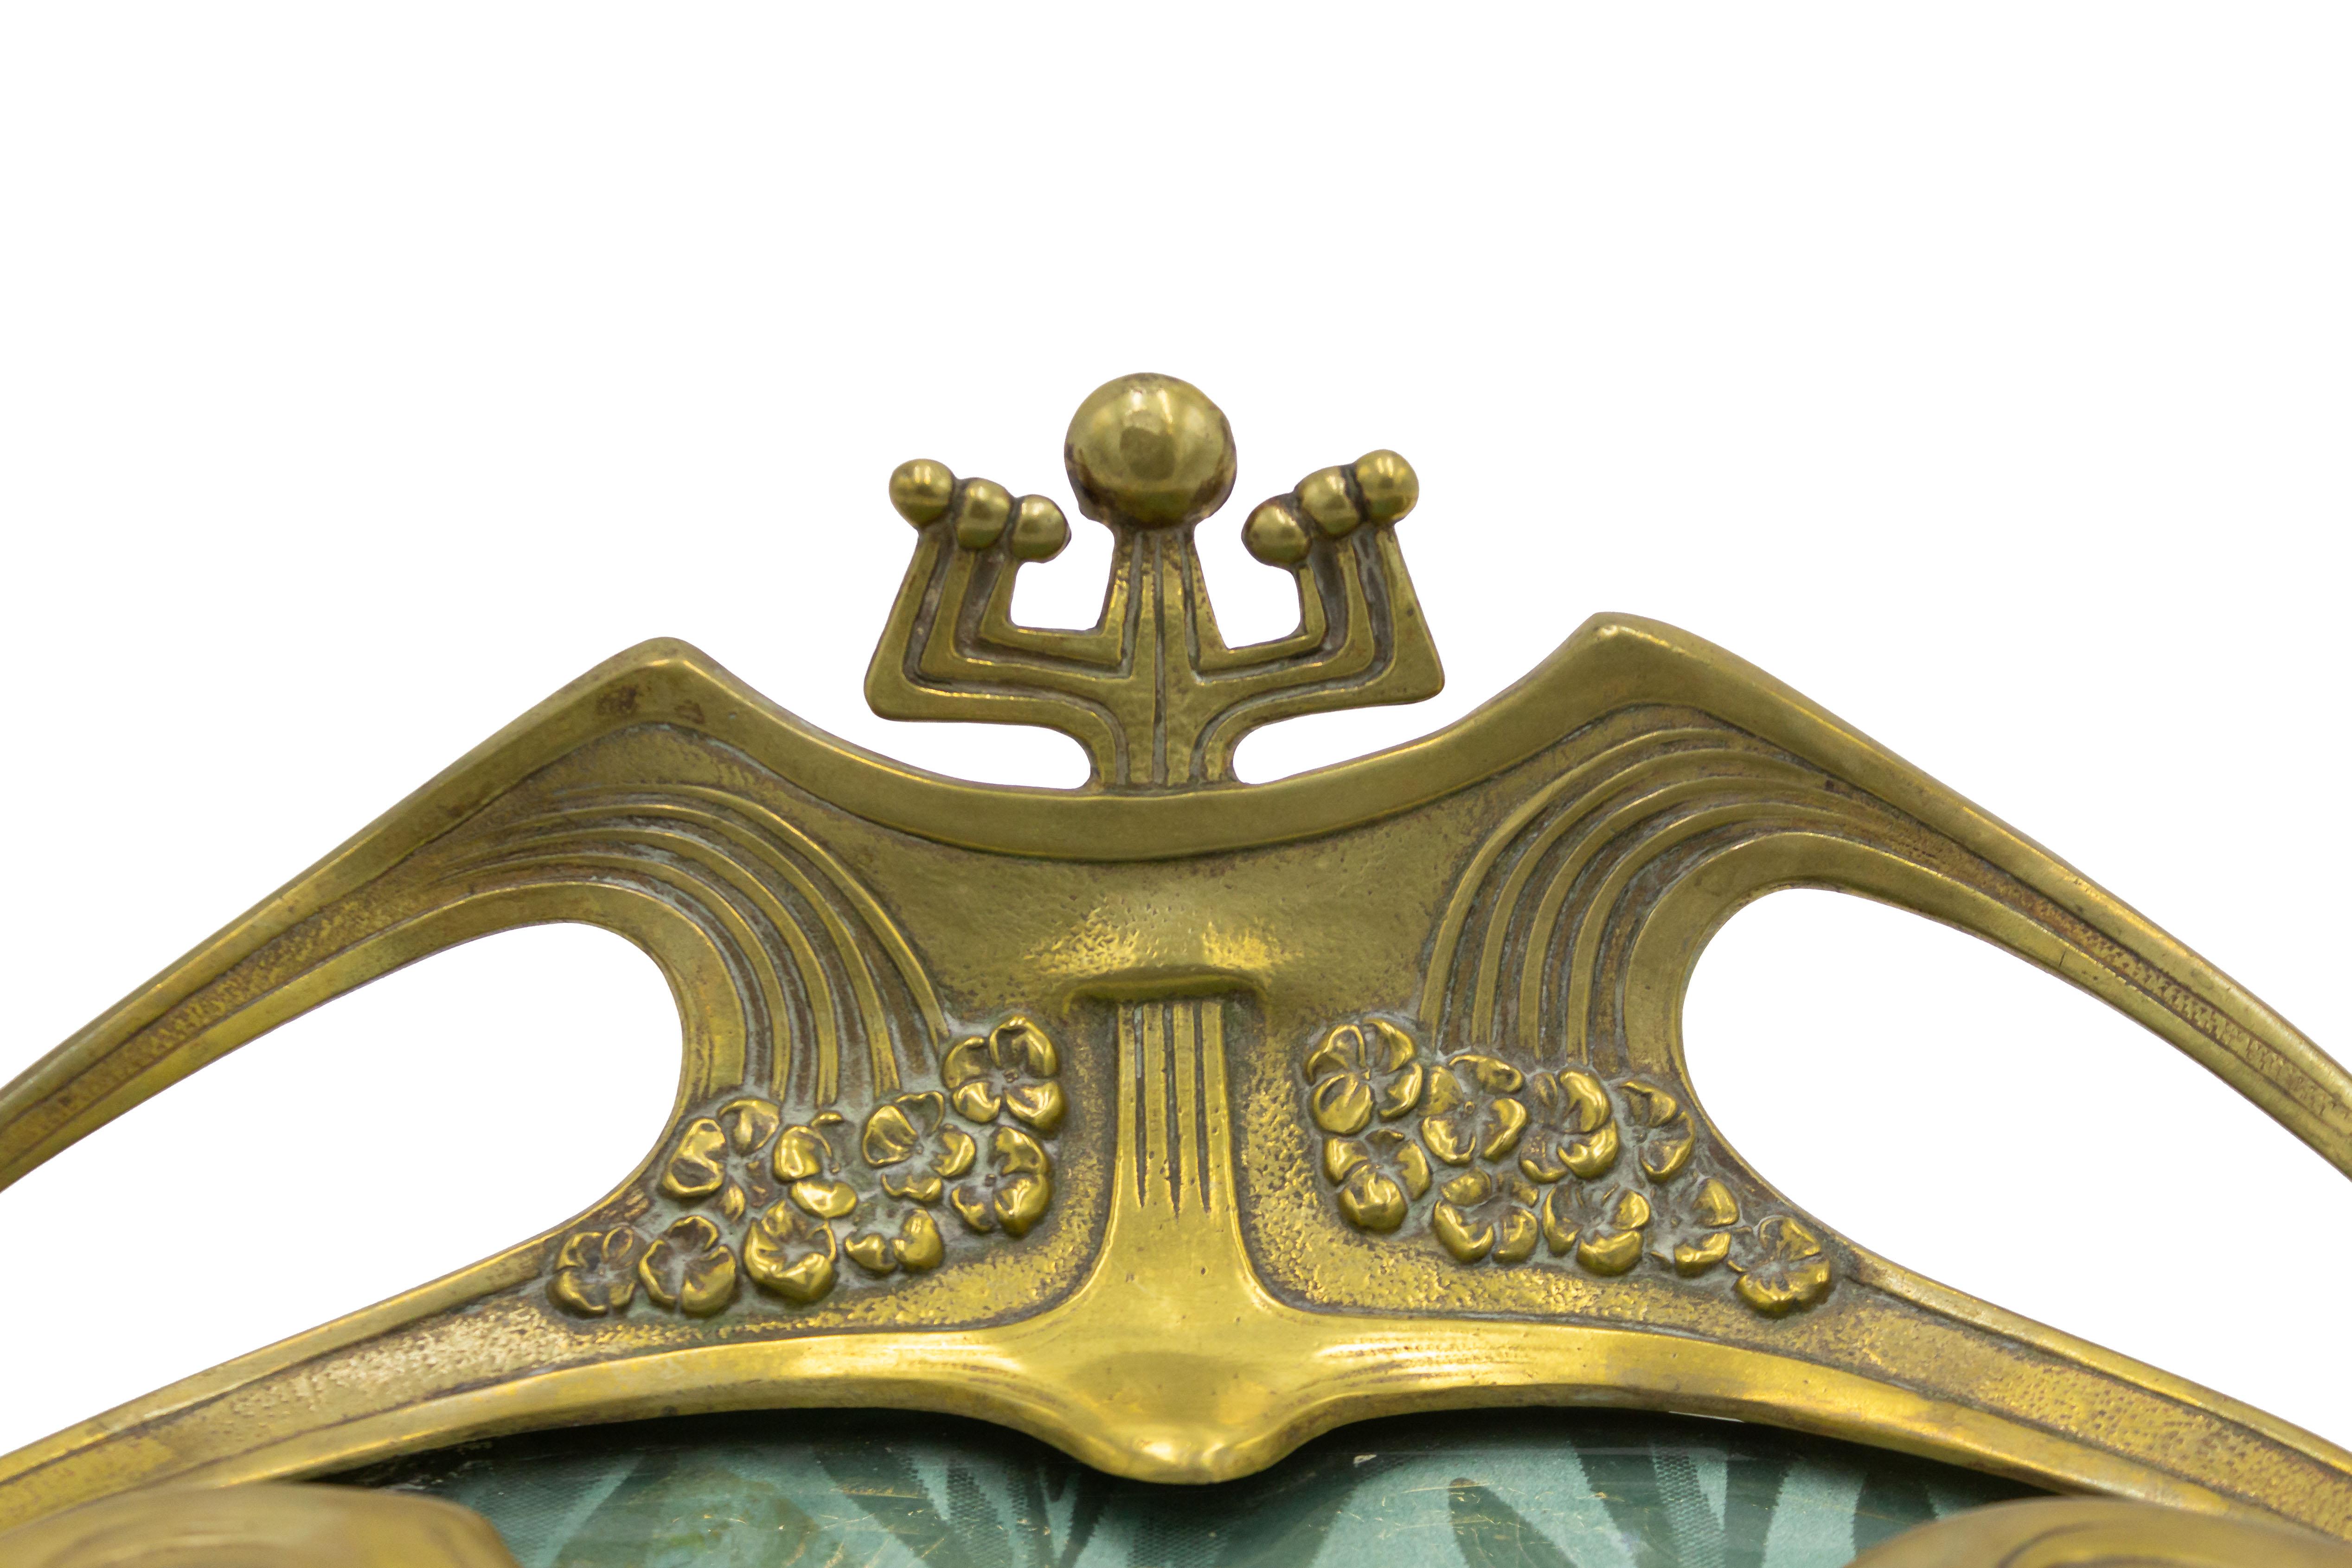 Französisches Doppeltintenfass aus Bronze im Jugendstil (Secessionismus) mit floralem Muster und grünem Stoff unter Glasboden.
 